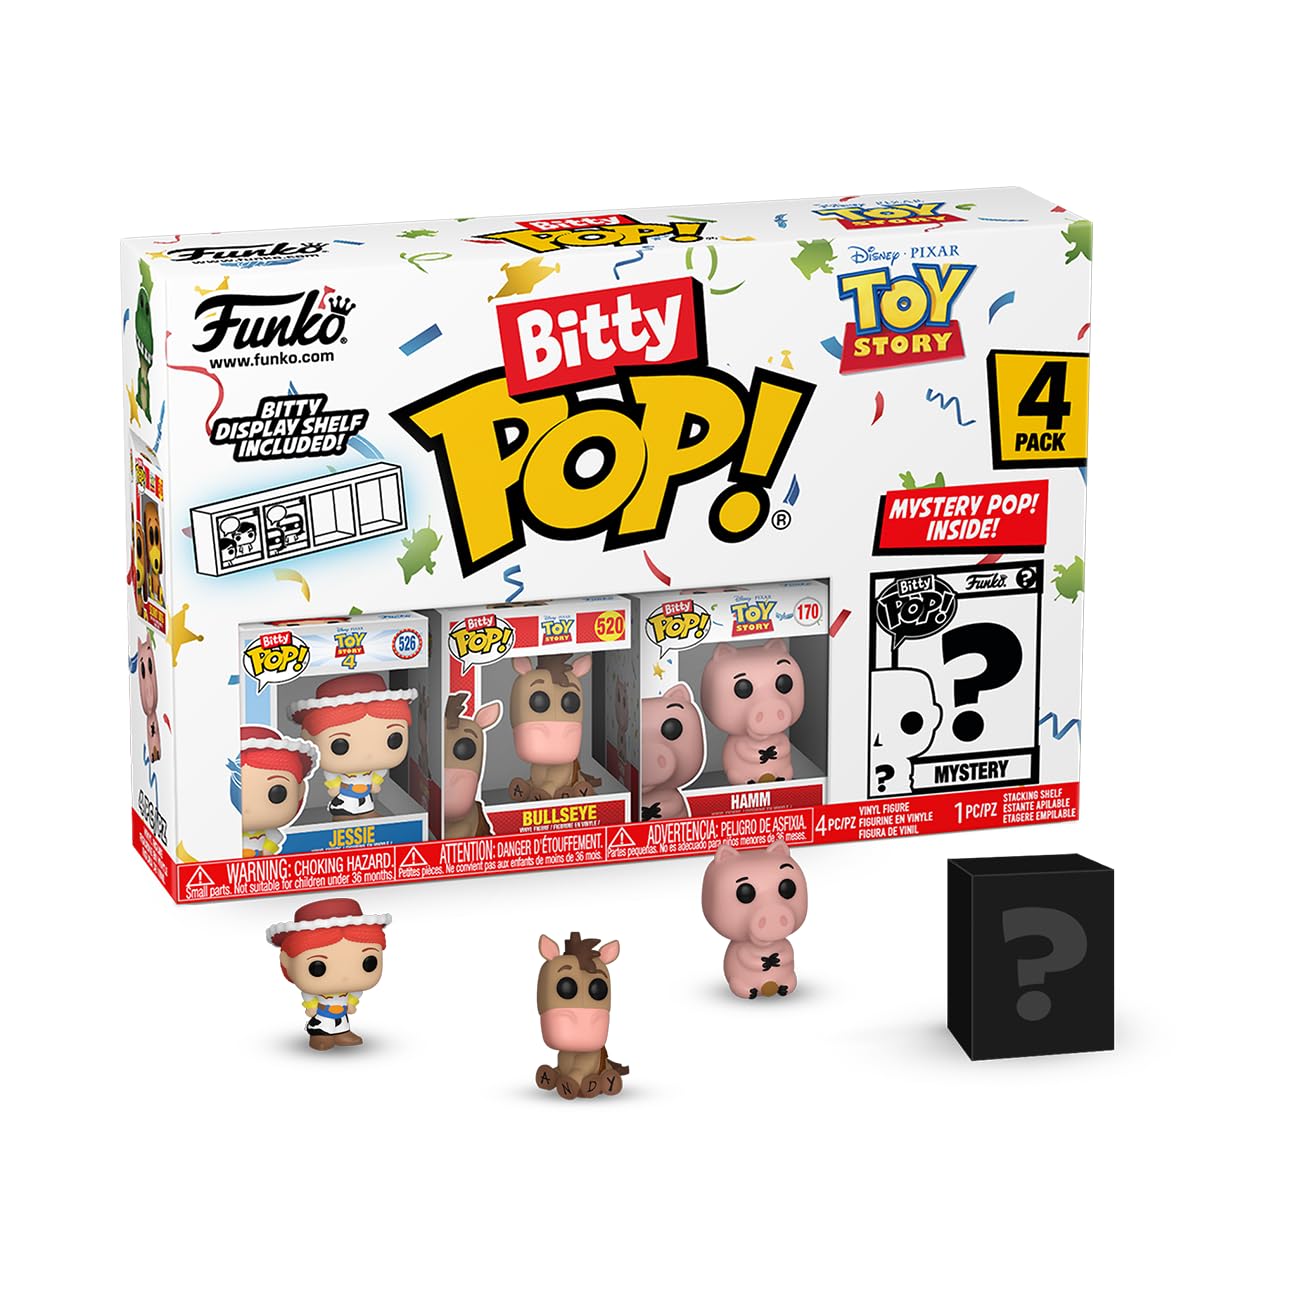 Funko Bitty Pop! Toy Story - Jessie 4PK - Jessie, Bullseye, Hamm and A Surprise 